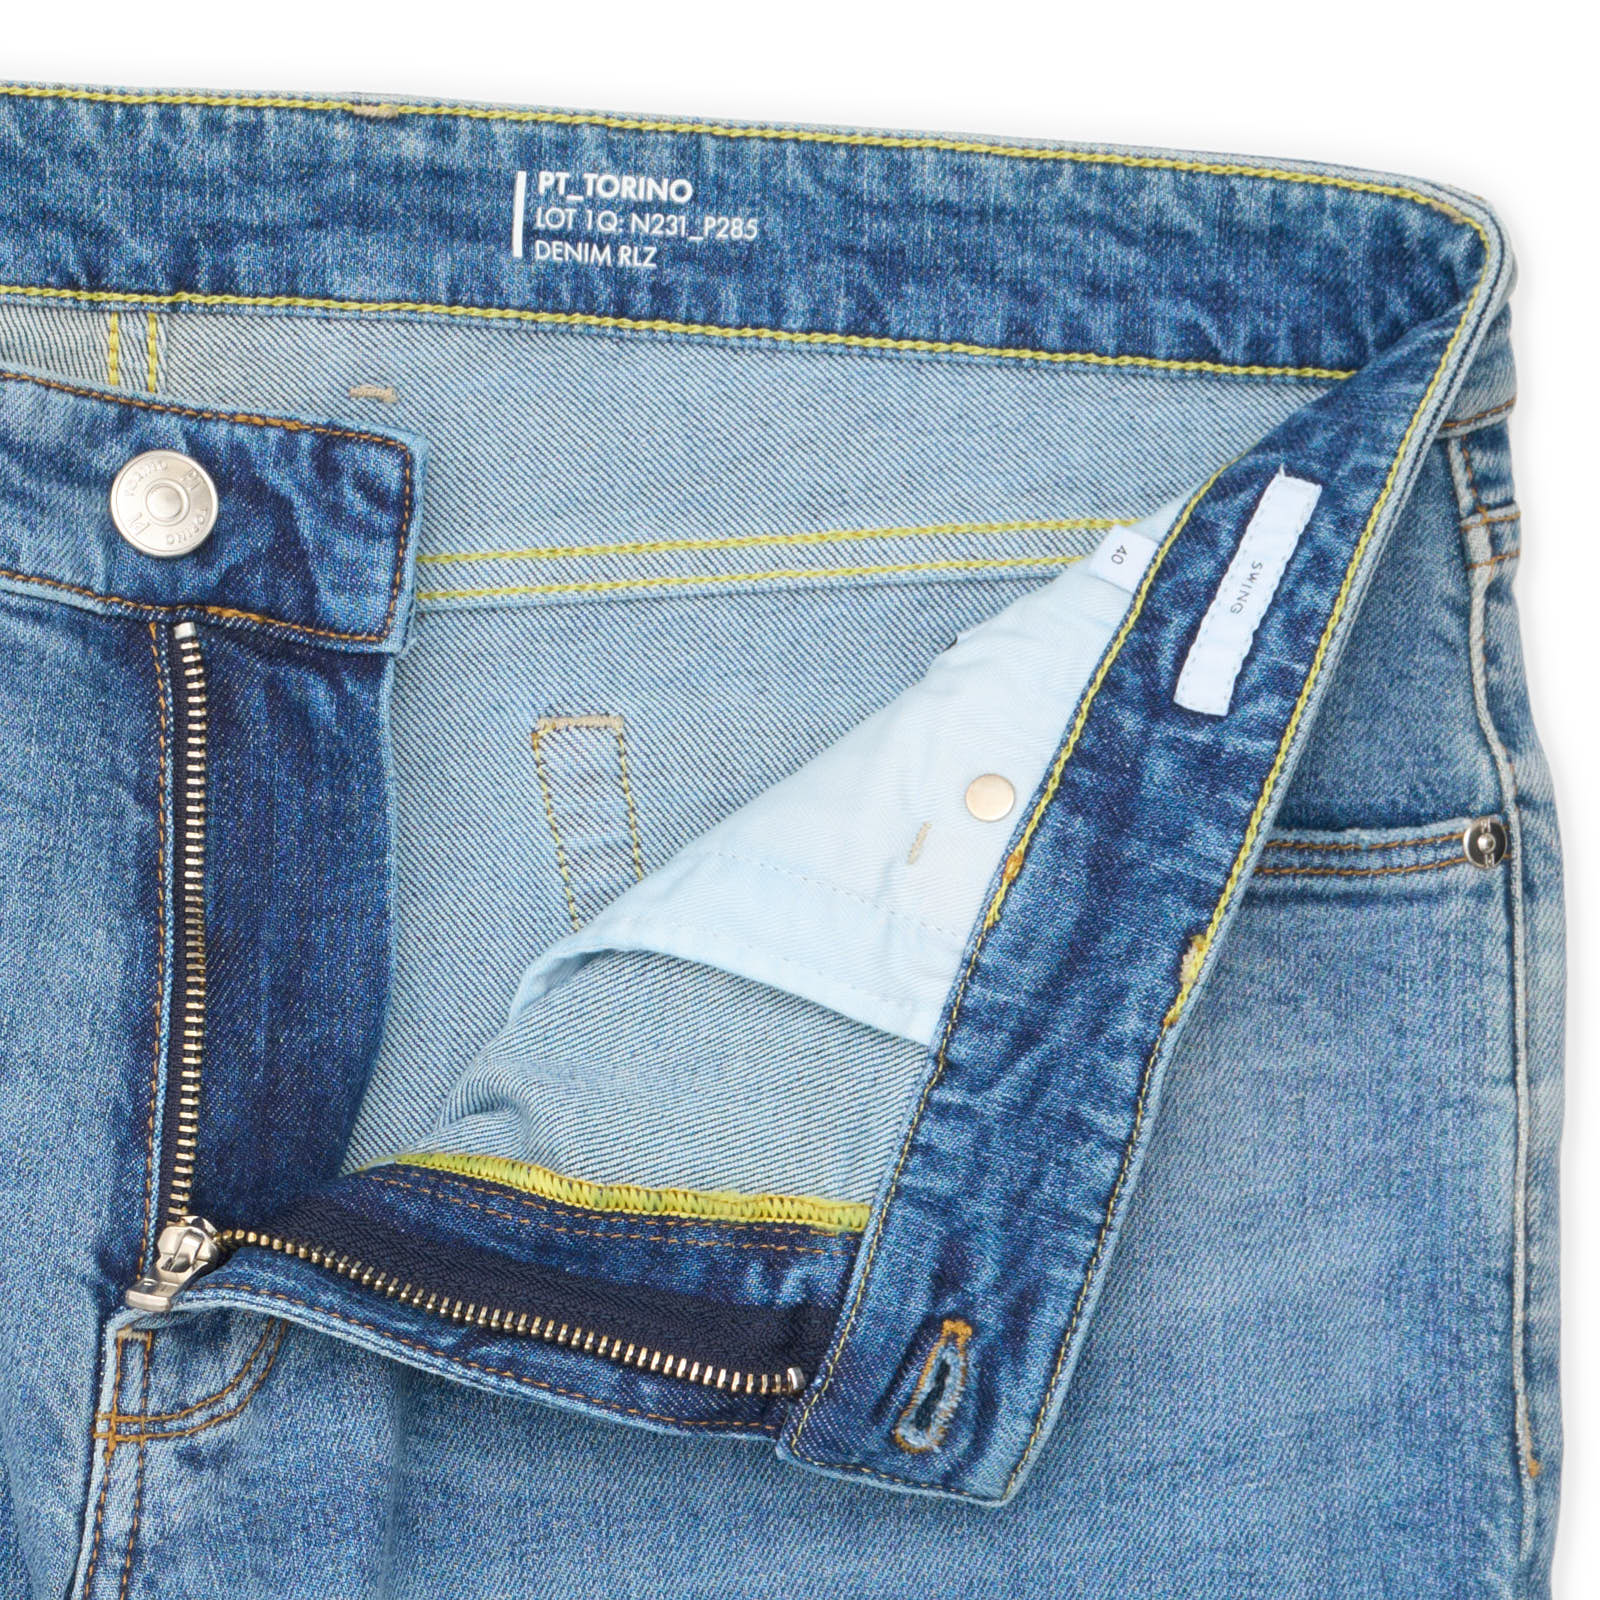 PT05 "Swing" Light Blue Denim Cotton Slim Fit Jeans Pants NEW US 40